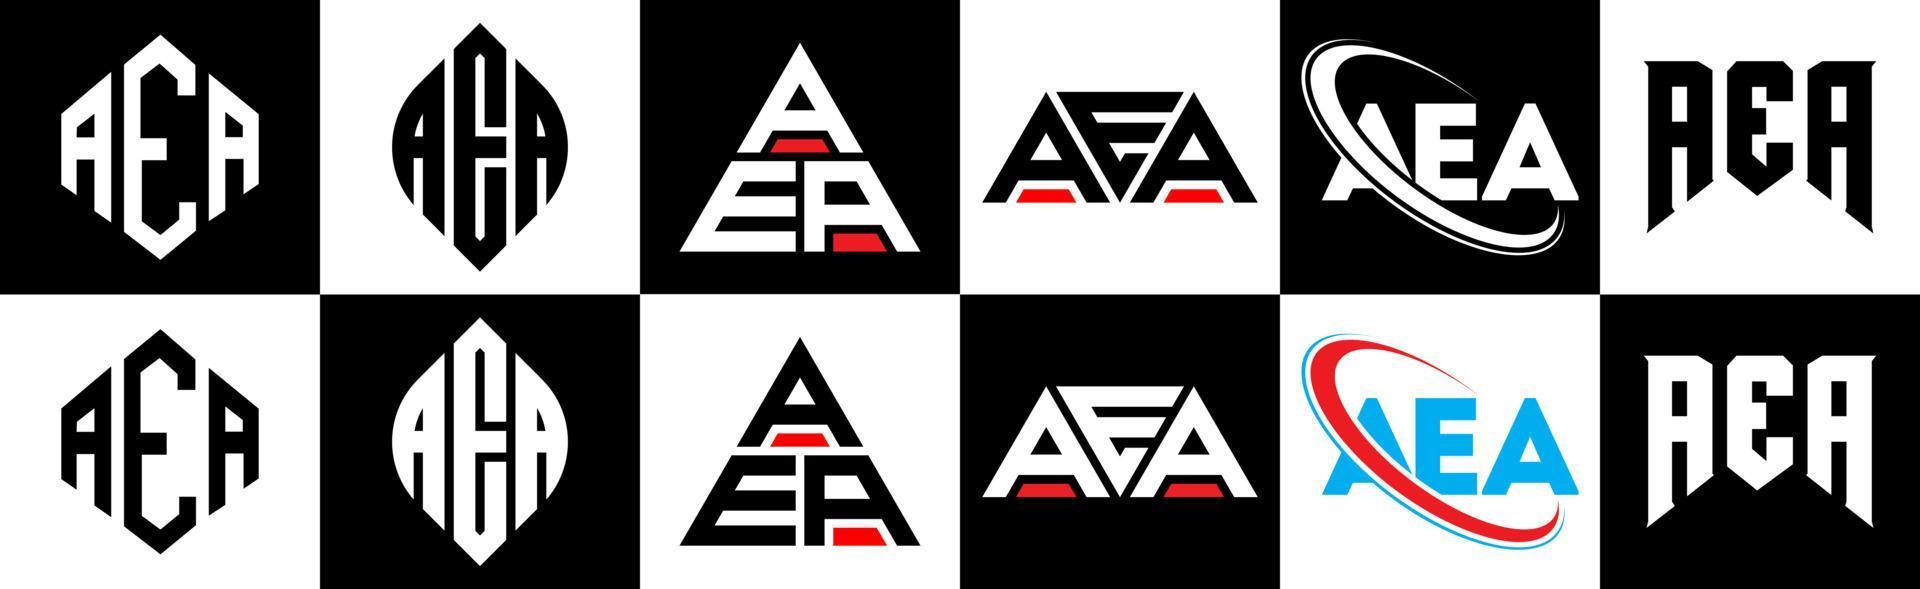 aea brief logo ontwerp in zes stijl. aea veelhoek, cirkel, driehoek, zeshoek, vlak en gemakkelijk stijl met zwart en wit kleur variatie brief logo reeks in een tekengebied. aea minimalistische en klassiek logo vector